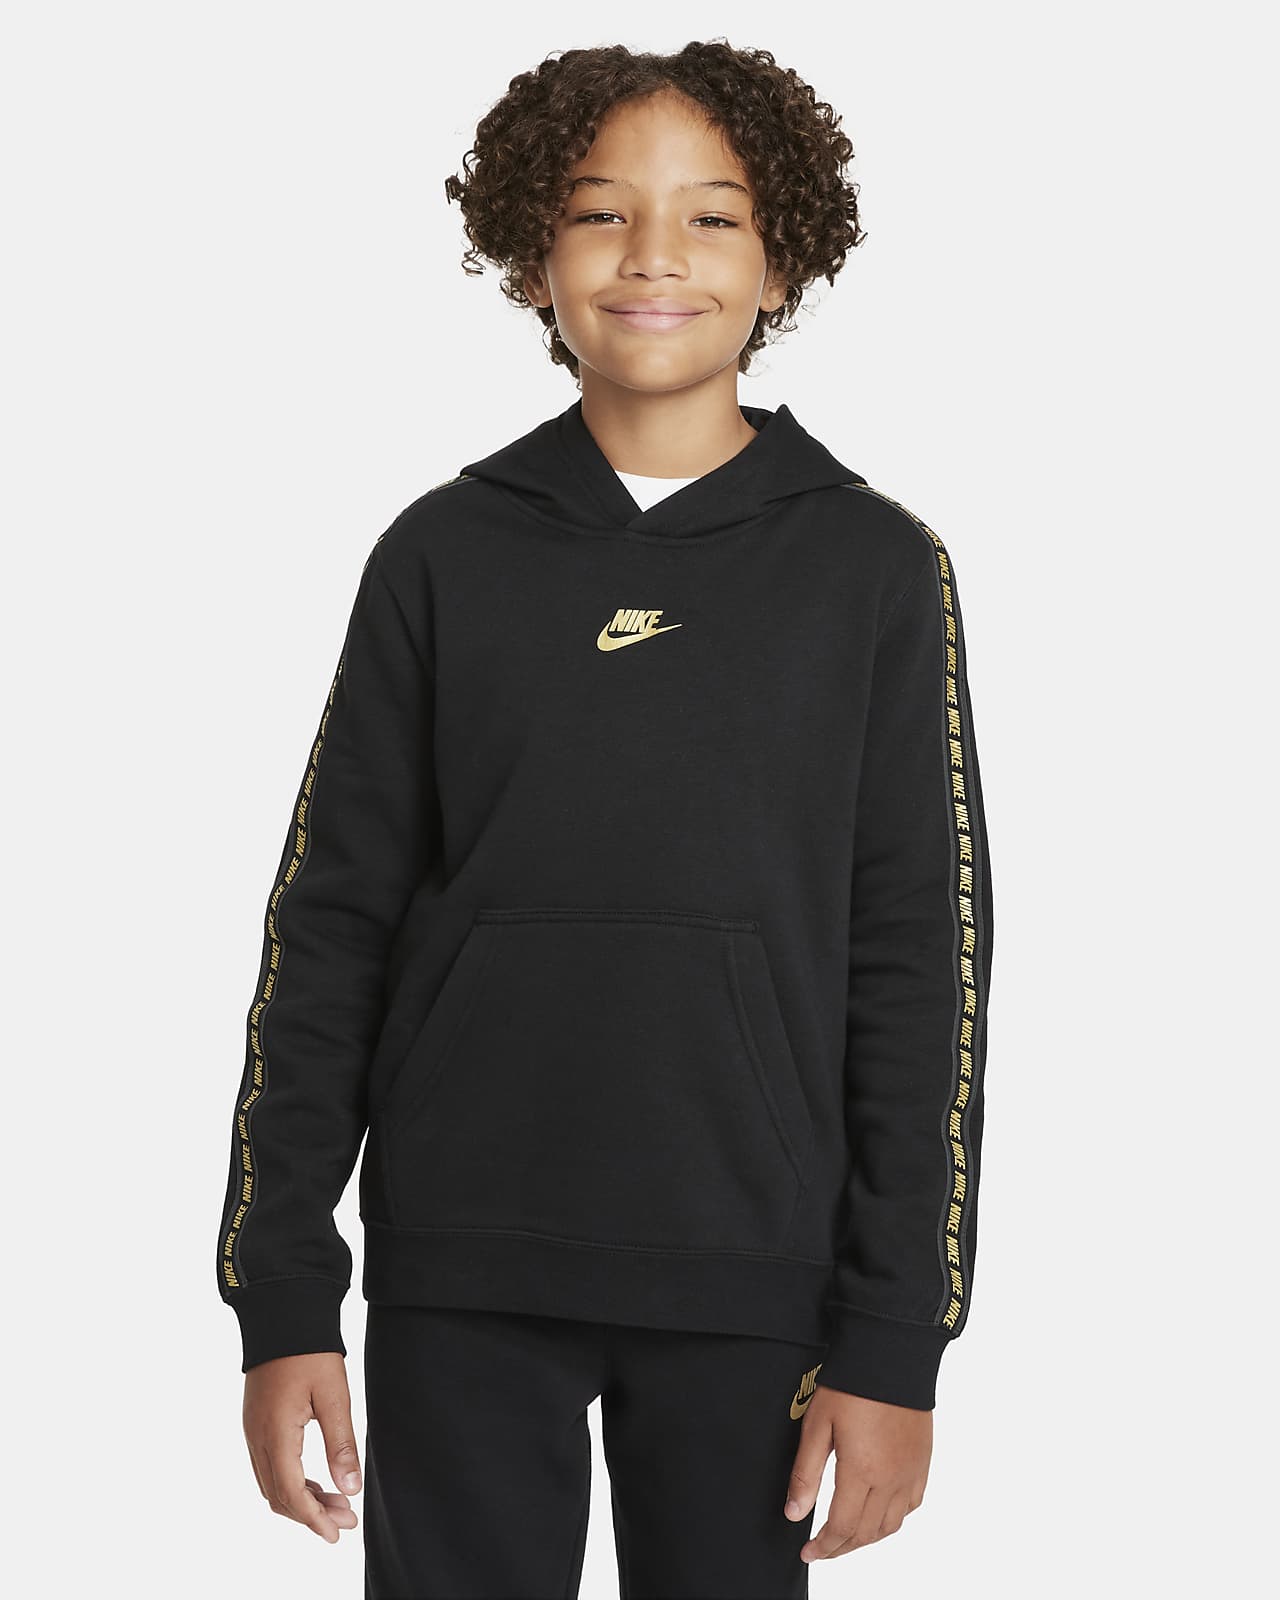 Флисовая худи для мальчиков школьного возраста Nike Sportswear